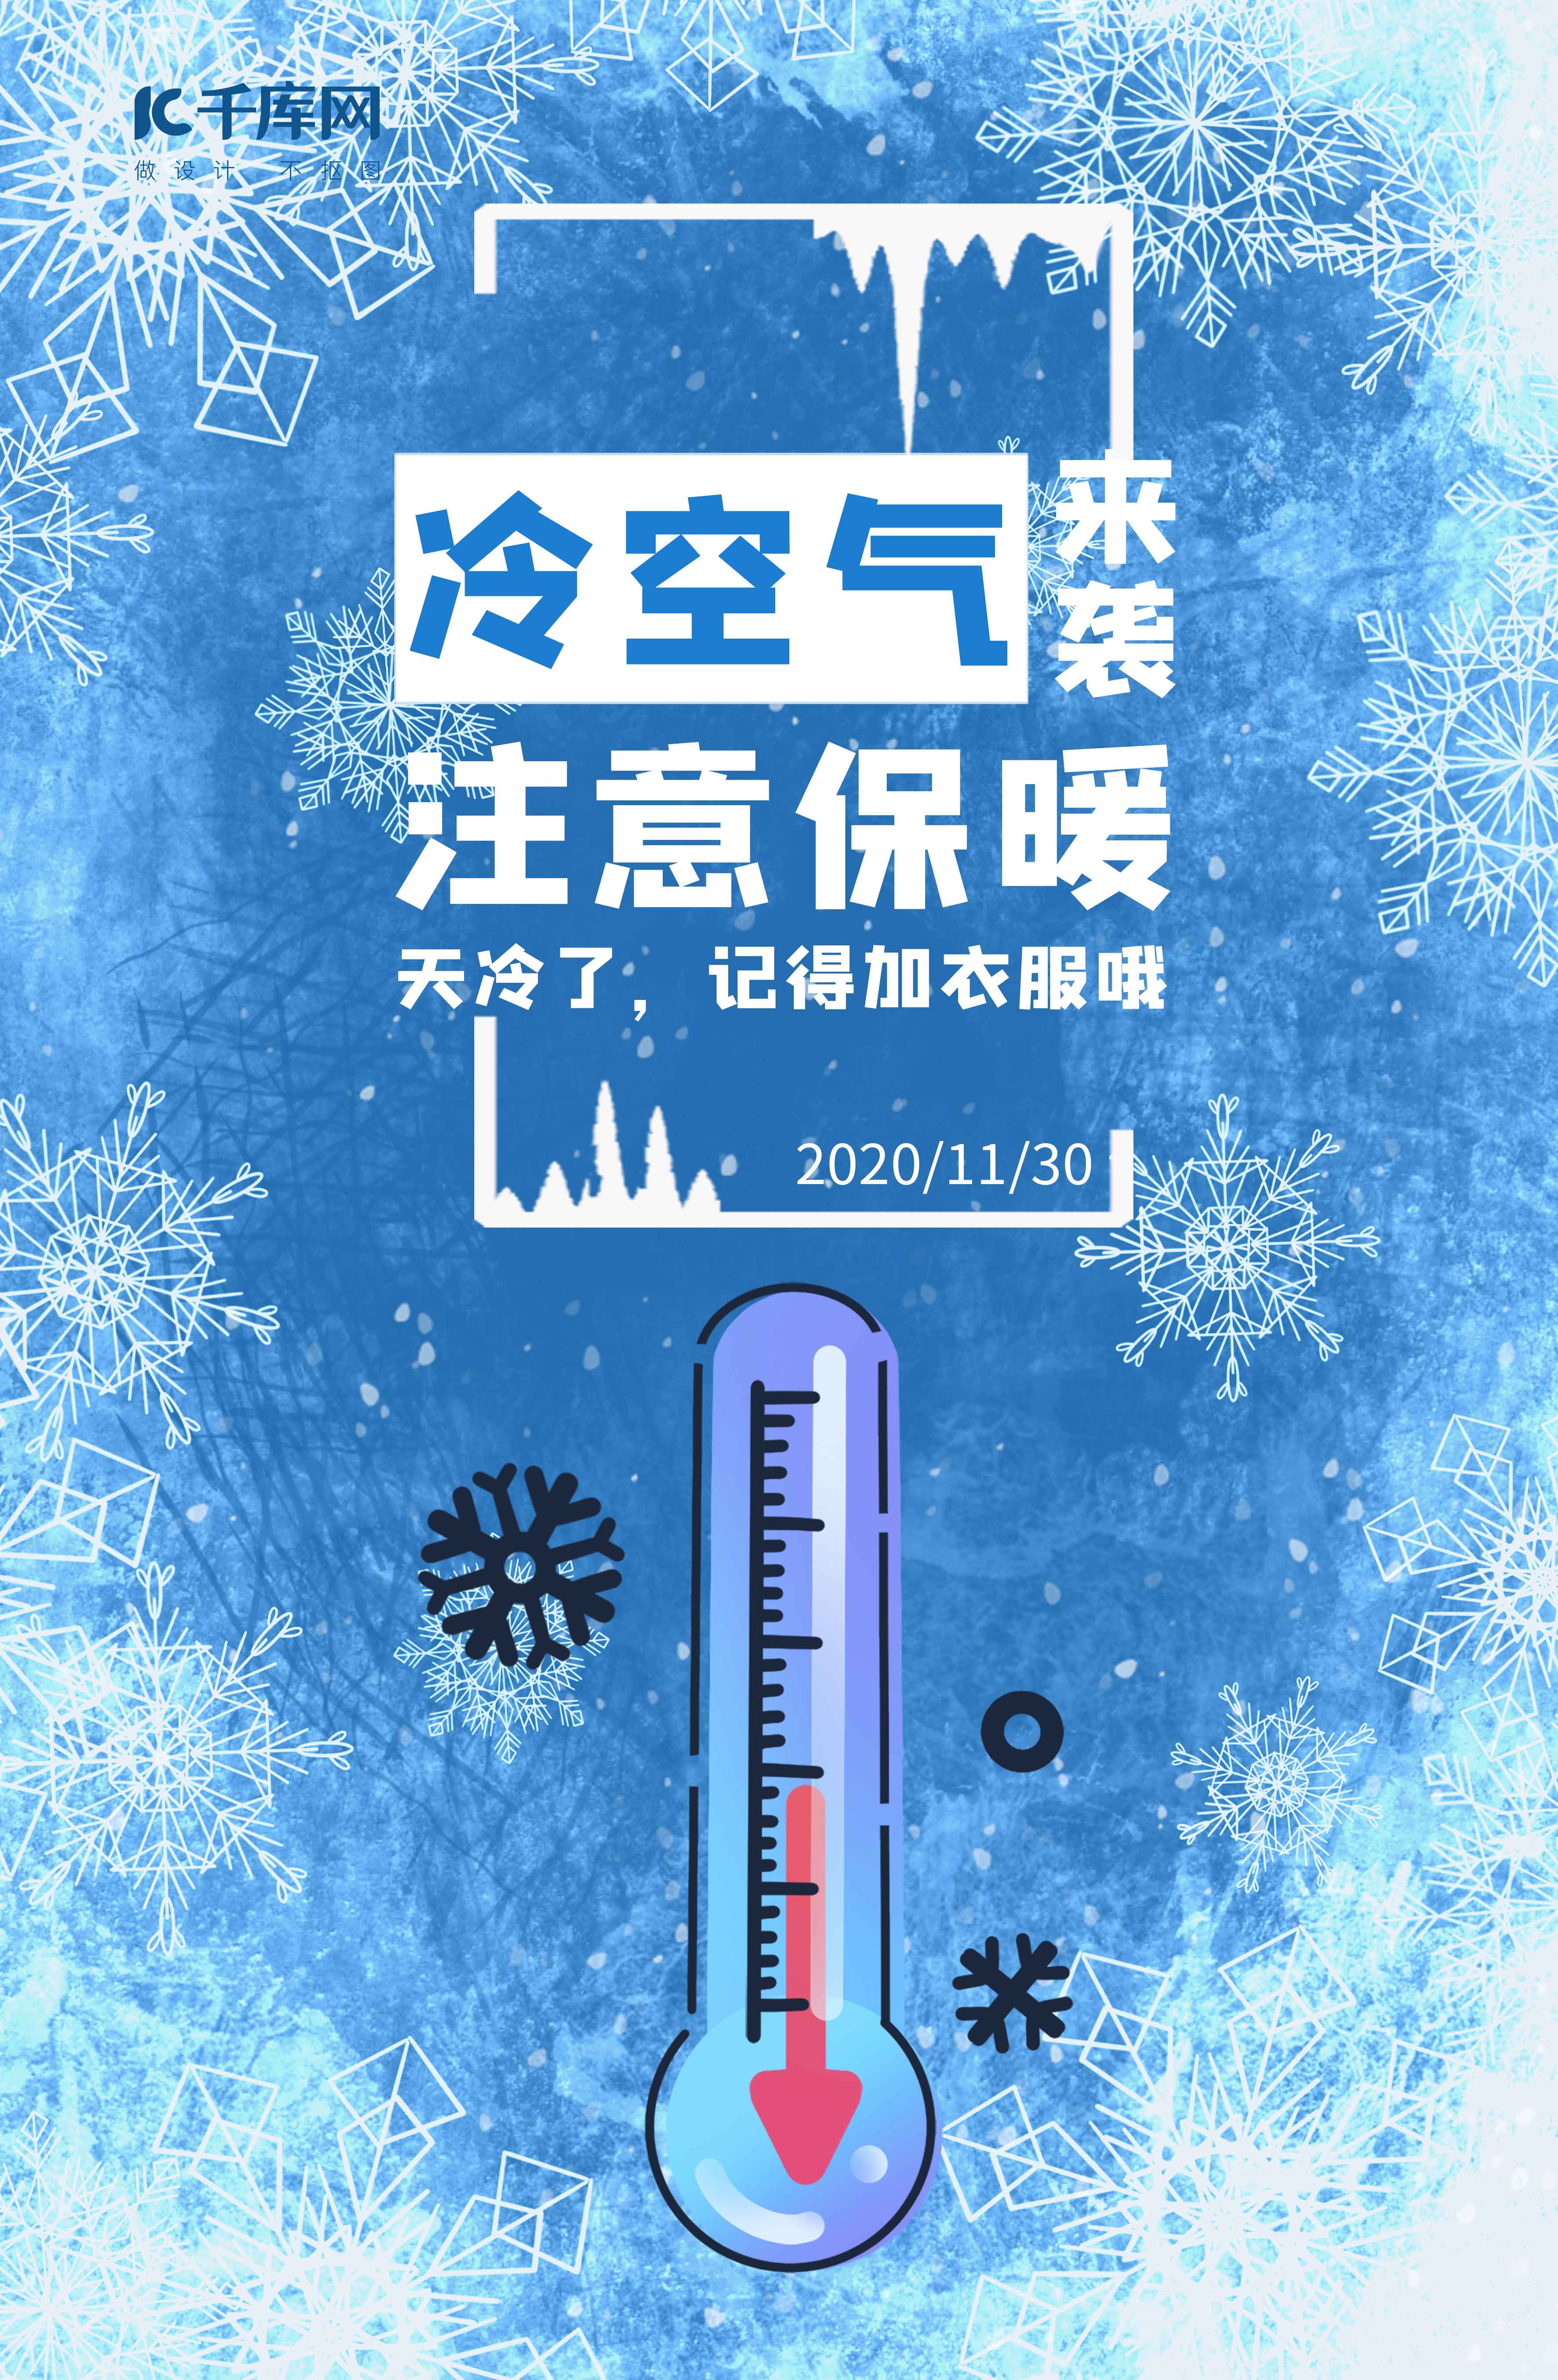 寒潮来袭注意保暖降温预警蓝色简约风海报图片